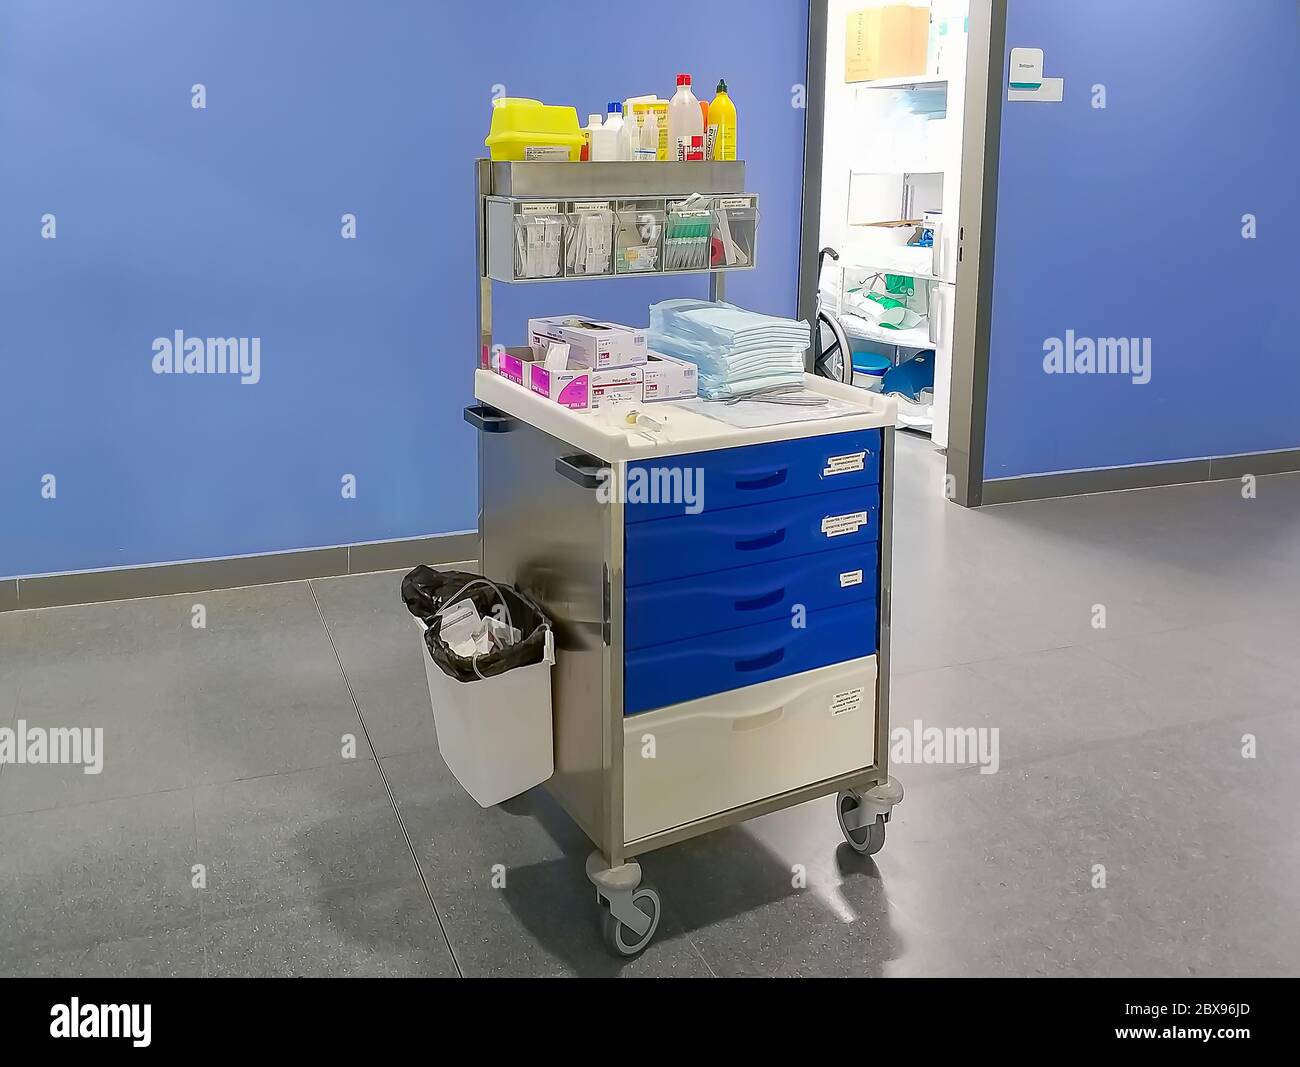 Huelva, Spanien - 6. Juni 2020: Medizinische Versorgung und medizinisches Instrumentarium auf einem Wagen im Korridor eines Krankenhauses Stockfoto